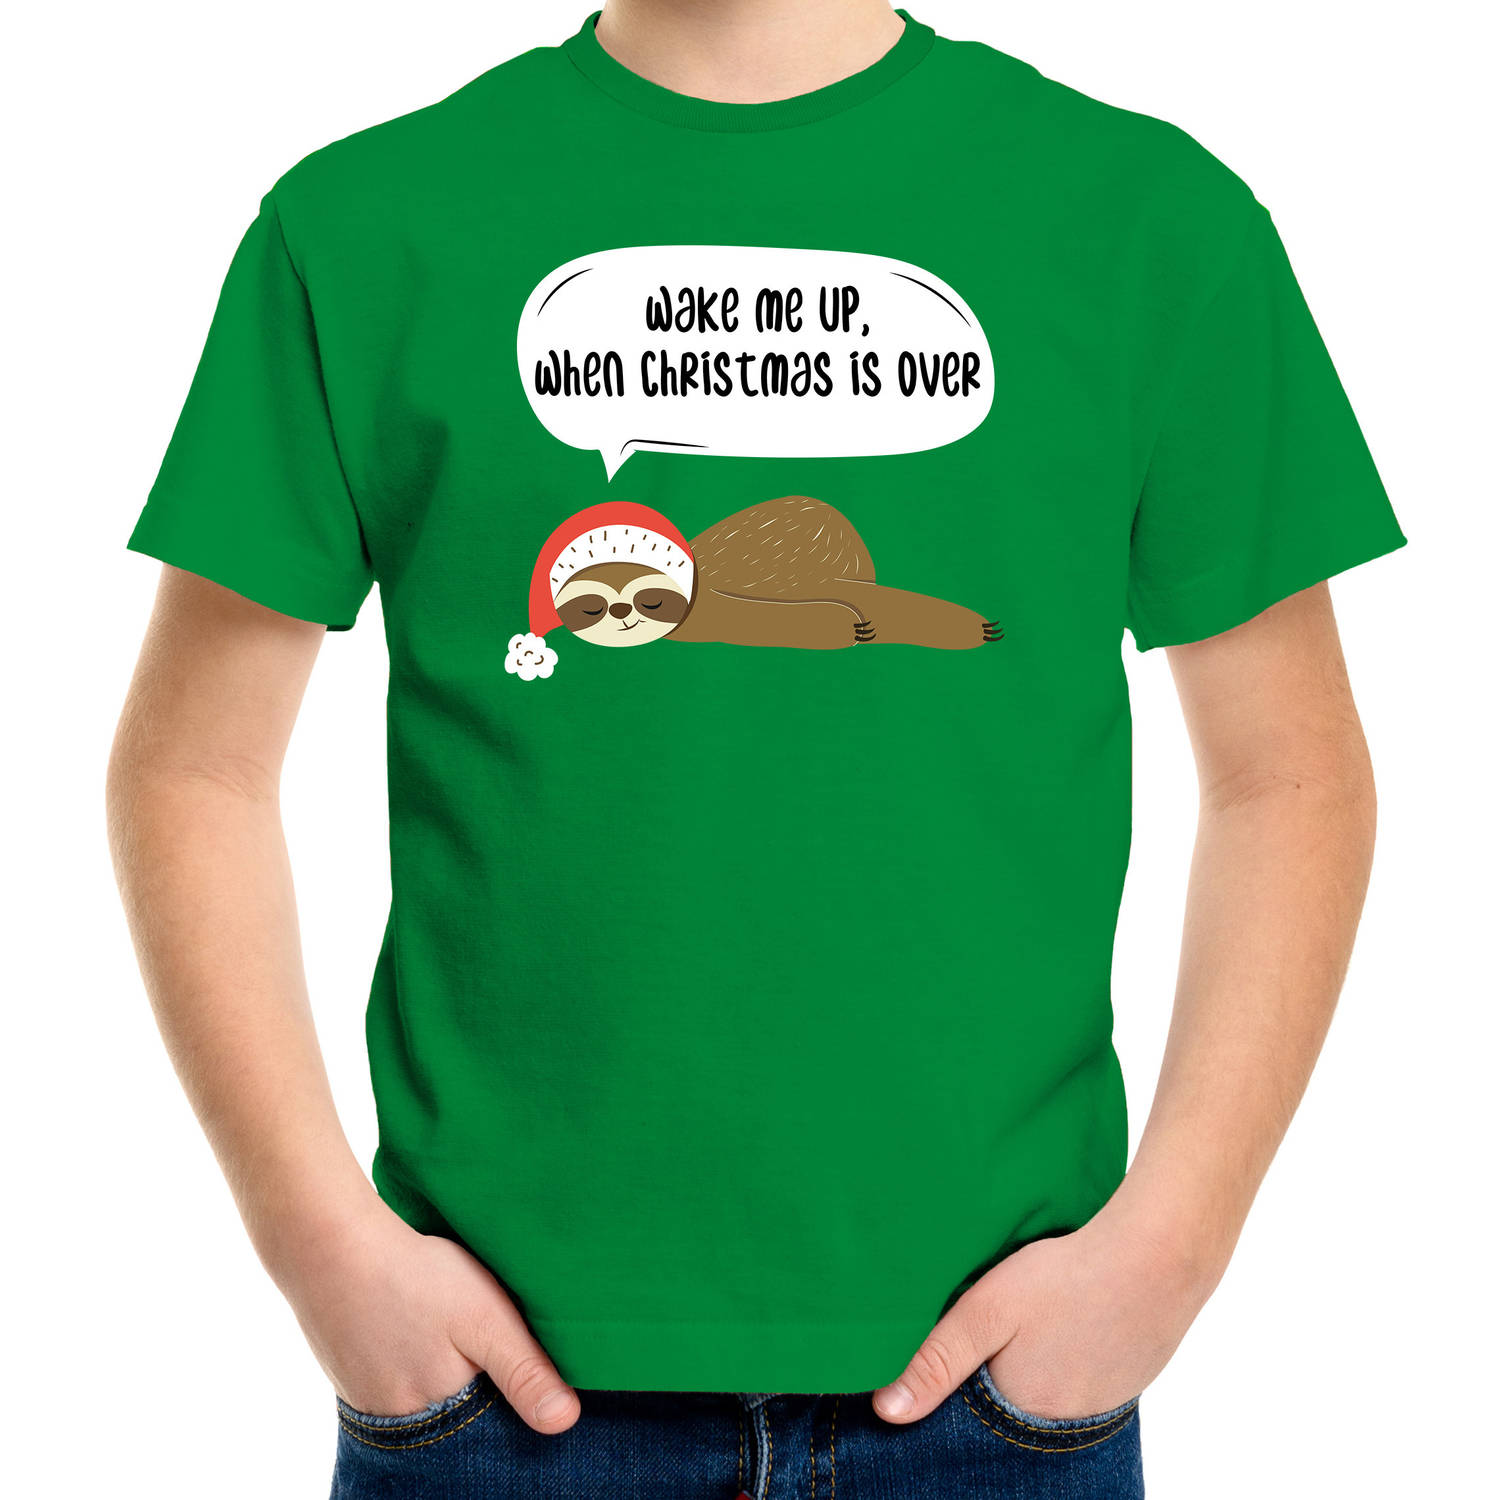 Groen Kerst shirt/ Kerstkleding met luiaard Wake me up when christmas is over voor kinderen XS (104-110) - kerst t-shirt